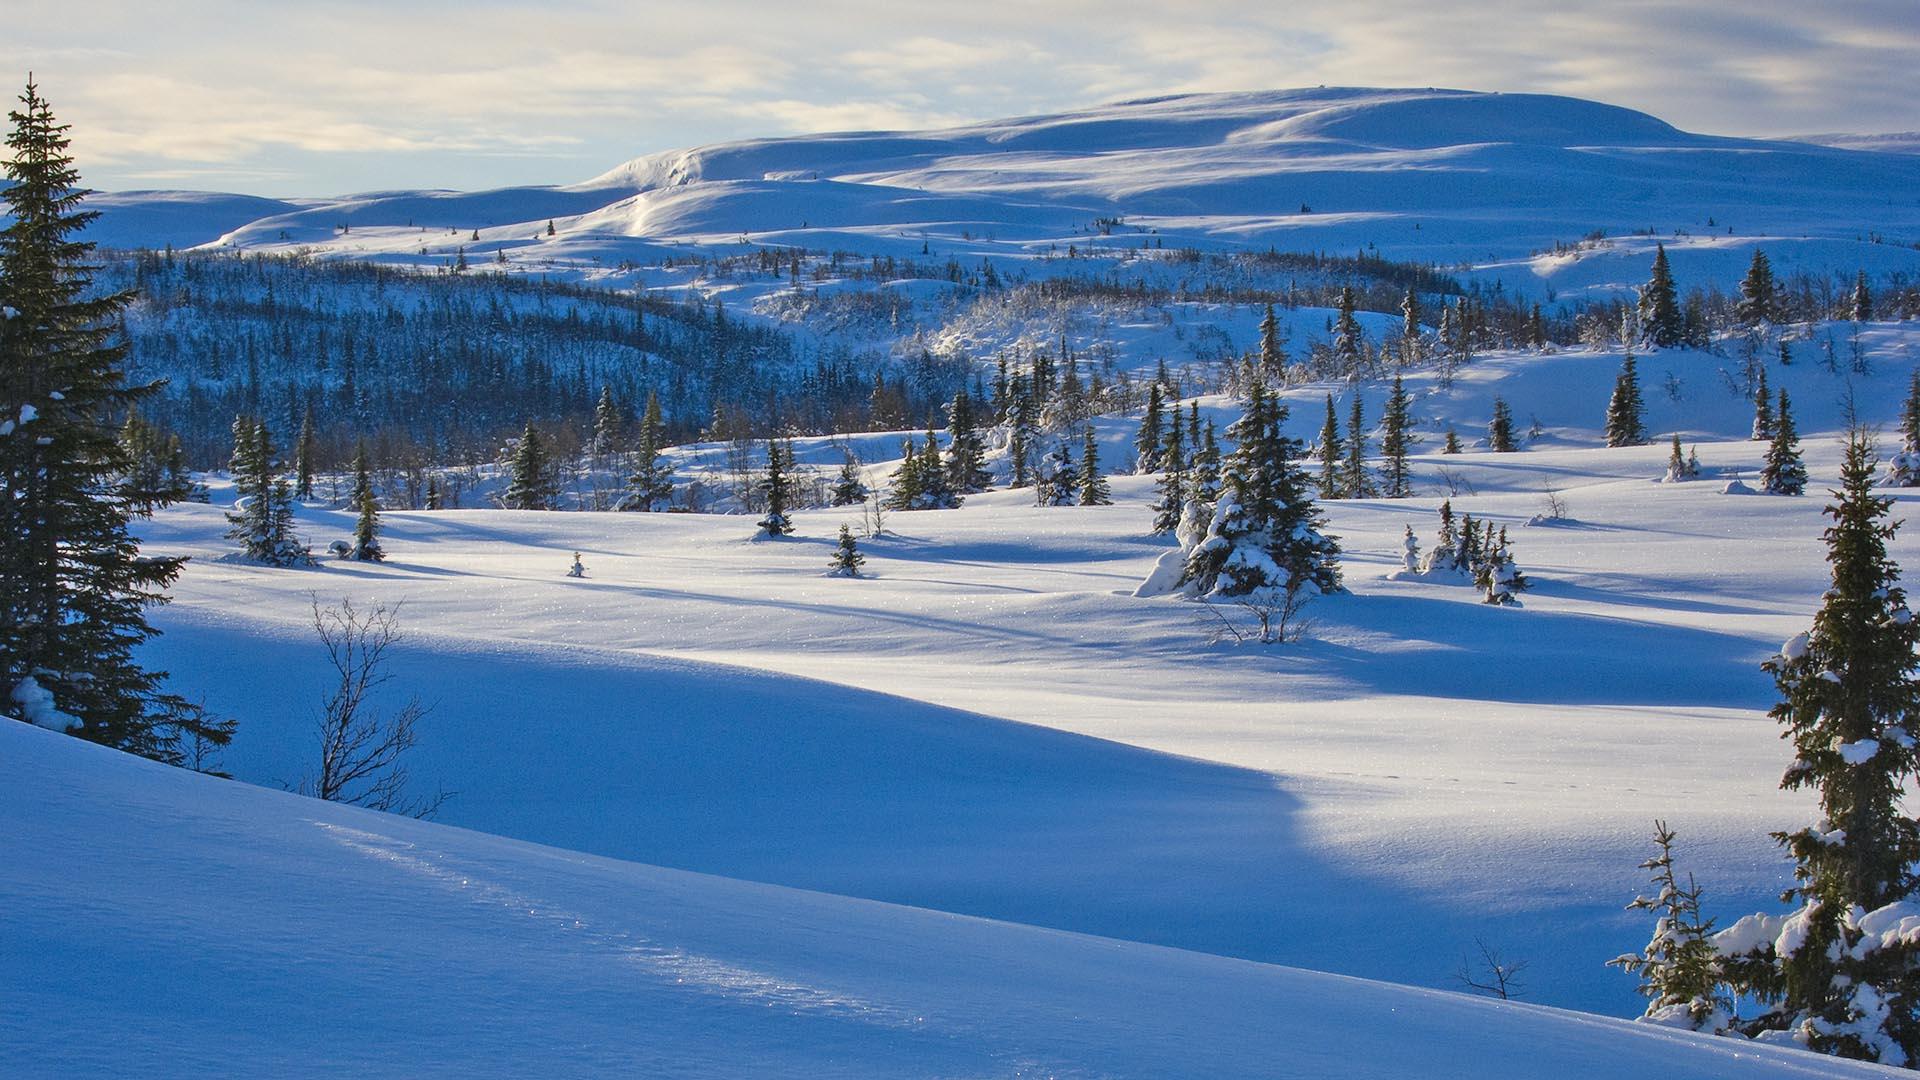 Im Winterfjell an der Baumgrenze mit vereinzelten kurzgewachsenen Fichten und einem höheren Berg im Hintergrund. Die niedrige Sonne wirft lange Schatten auf dem Schnee.